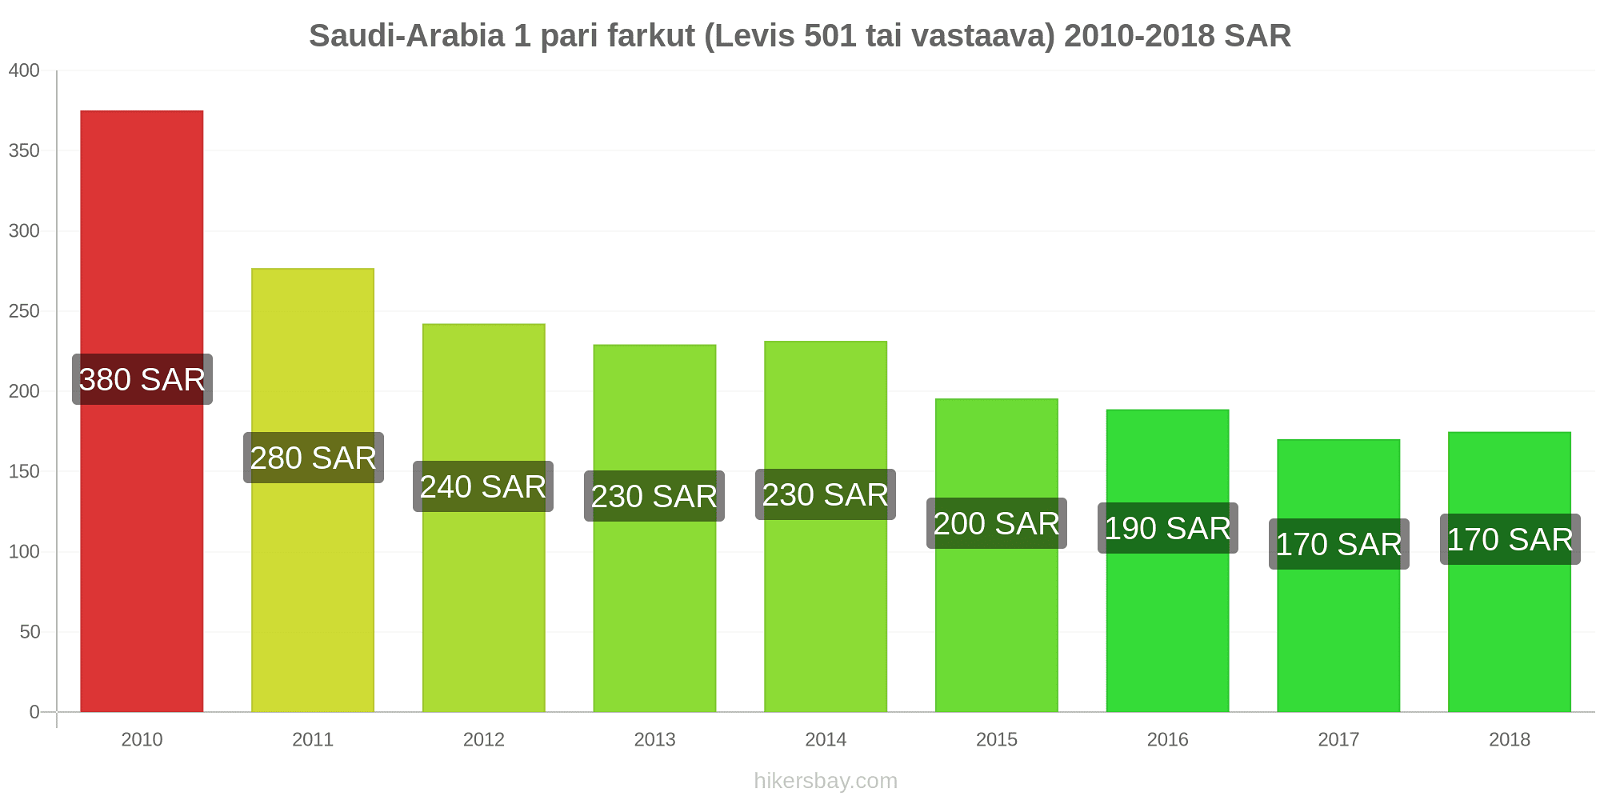 Saudi-Arabia hintojen muutokset 1 pari farkut (Levis 501 tai vastaava) hikersbay.com